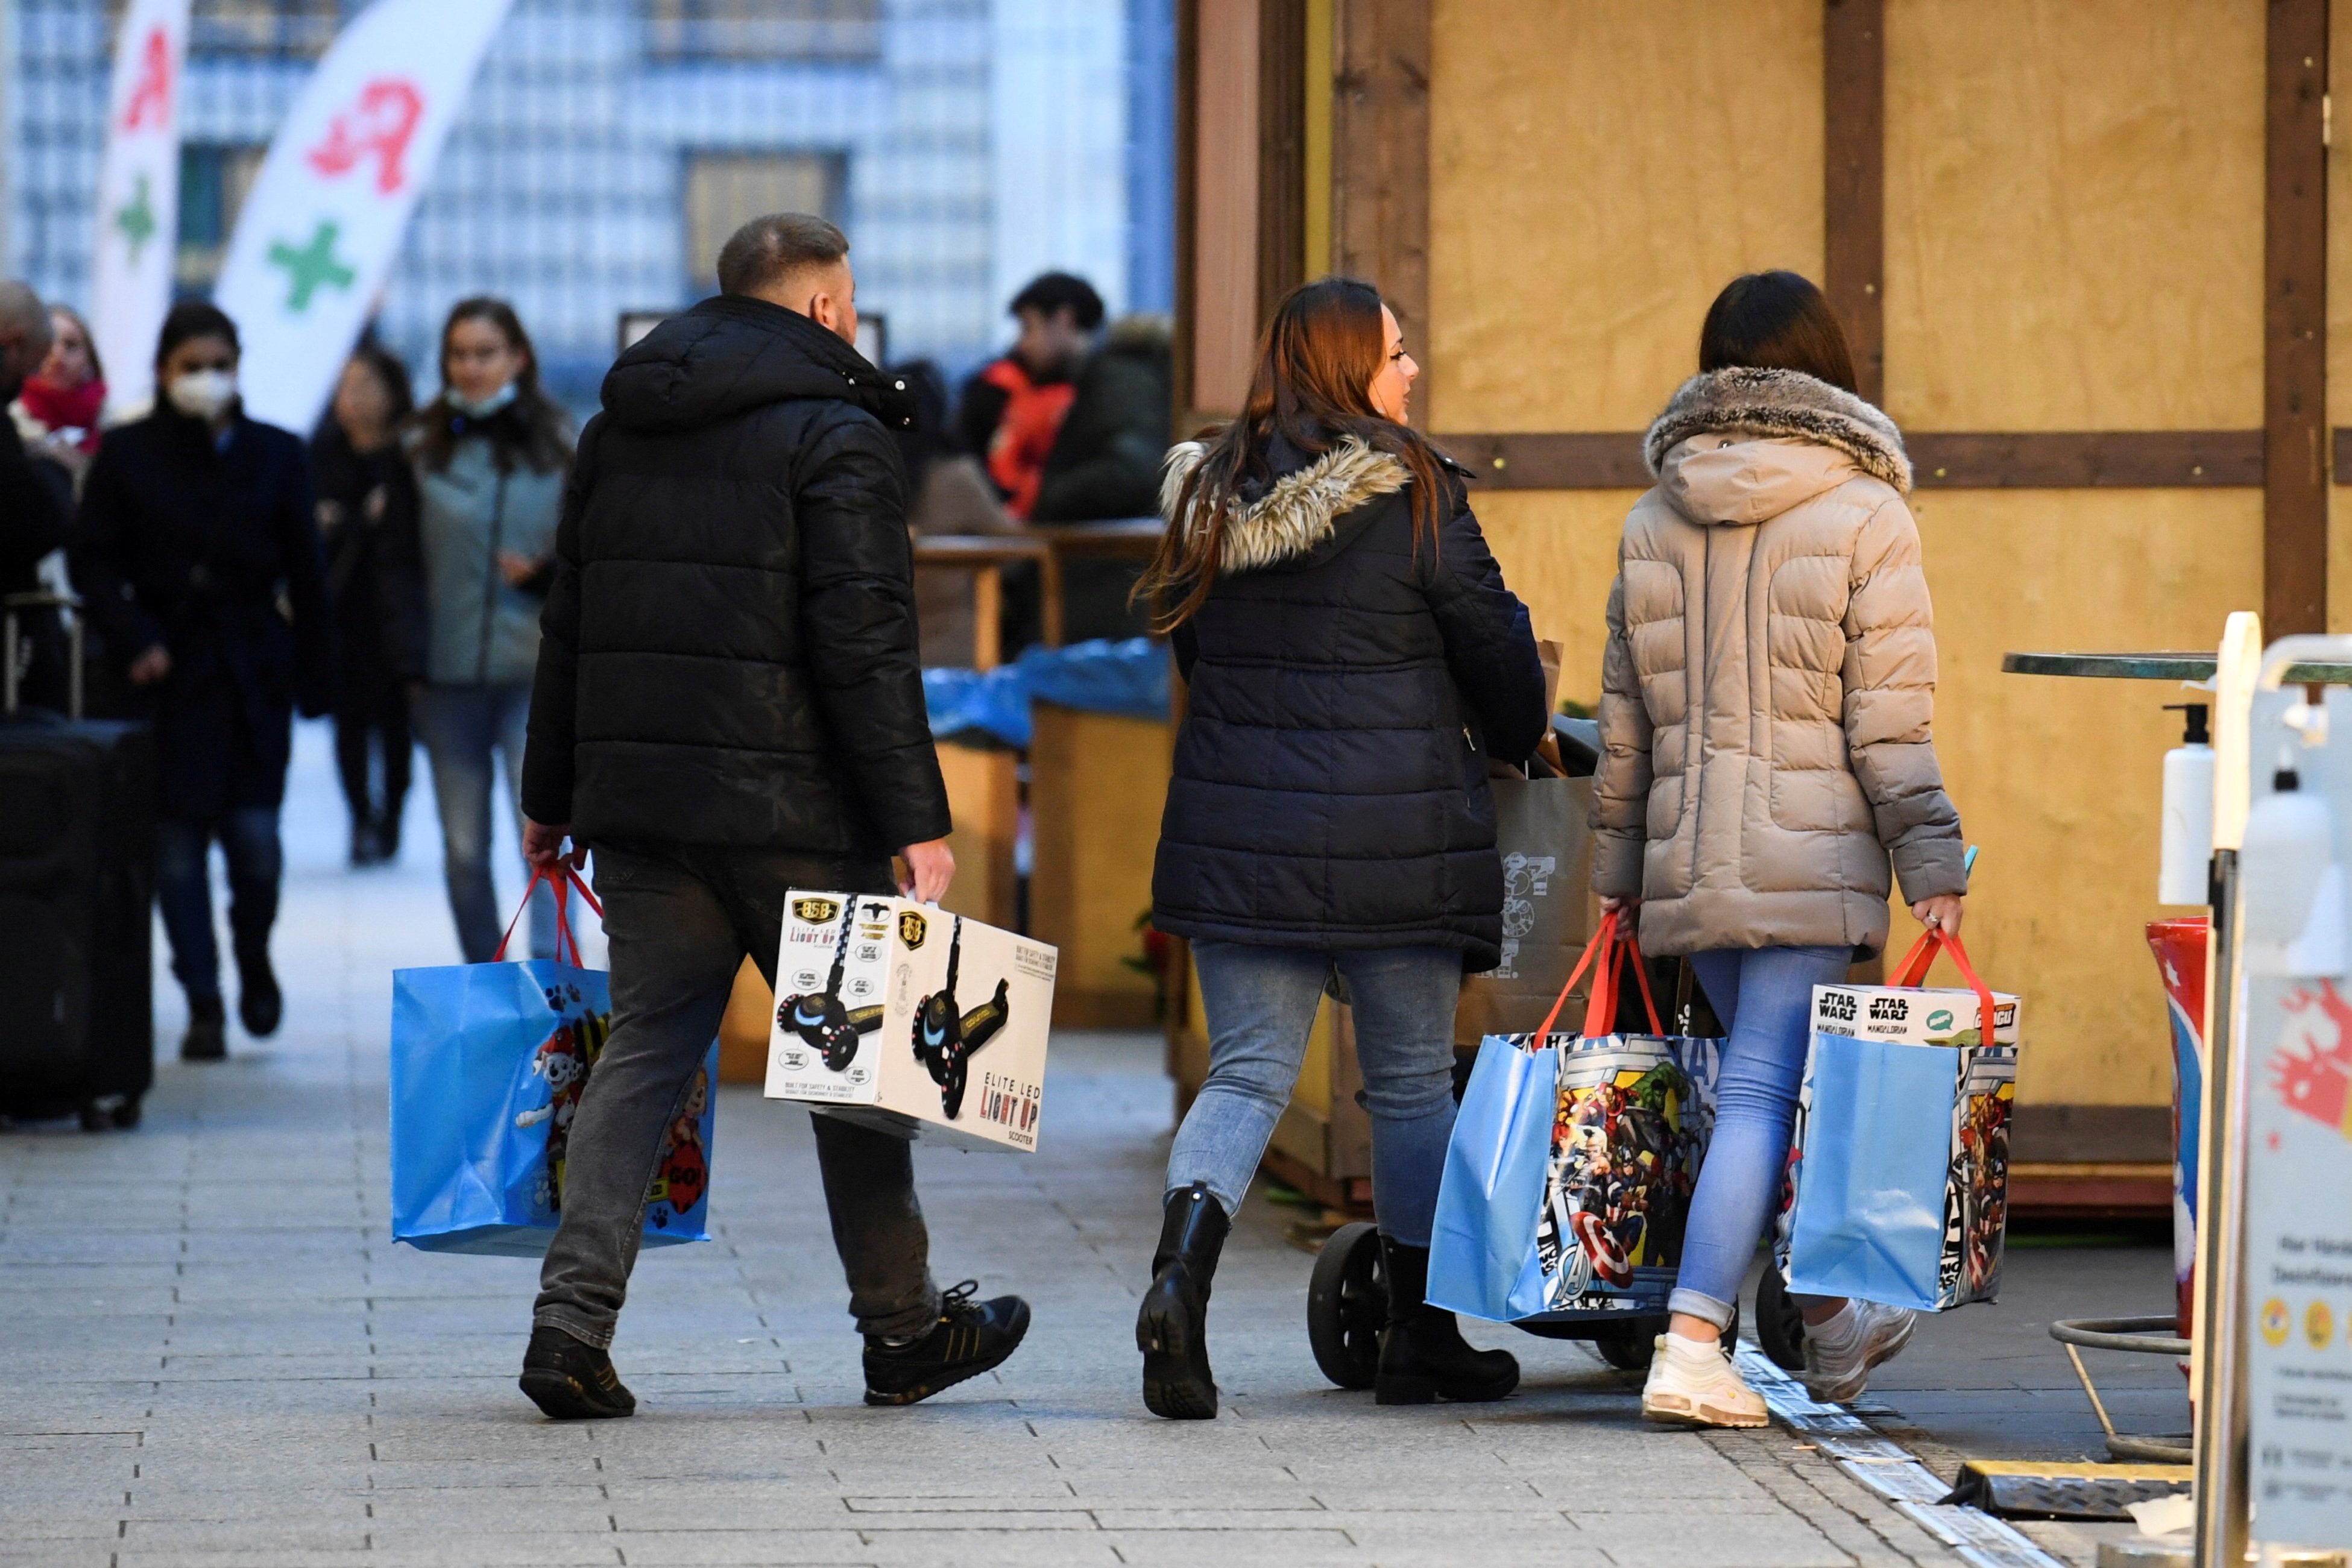 FOTO DE ARCHIVO: Personas con bolsas de compra caminan cerca de un centro comercial, en medio de la pandemia de la enfermedad del coronavirus (COVID-19), en Berlín, Alemania 21 de diciembre de 2021. REUTERS/Annegret Hilse